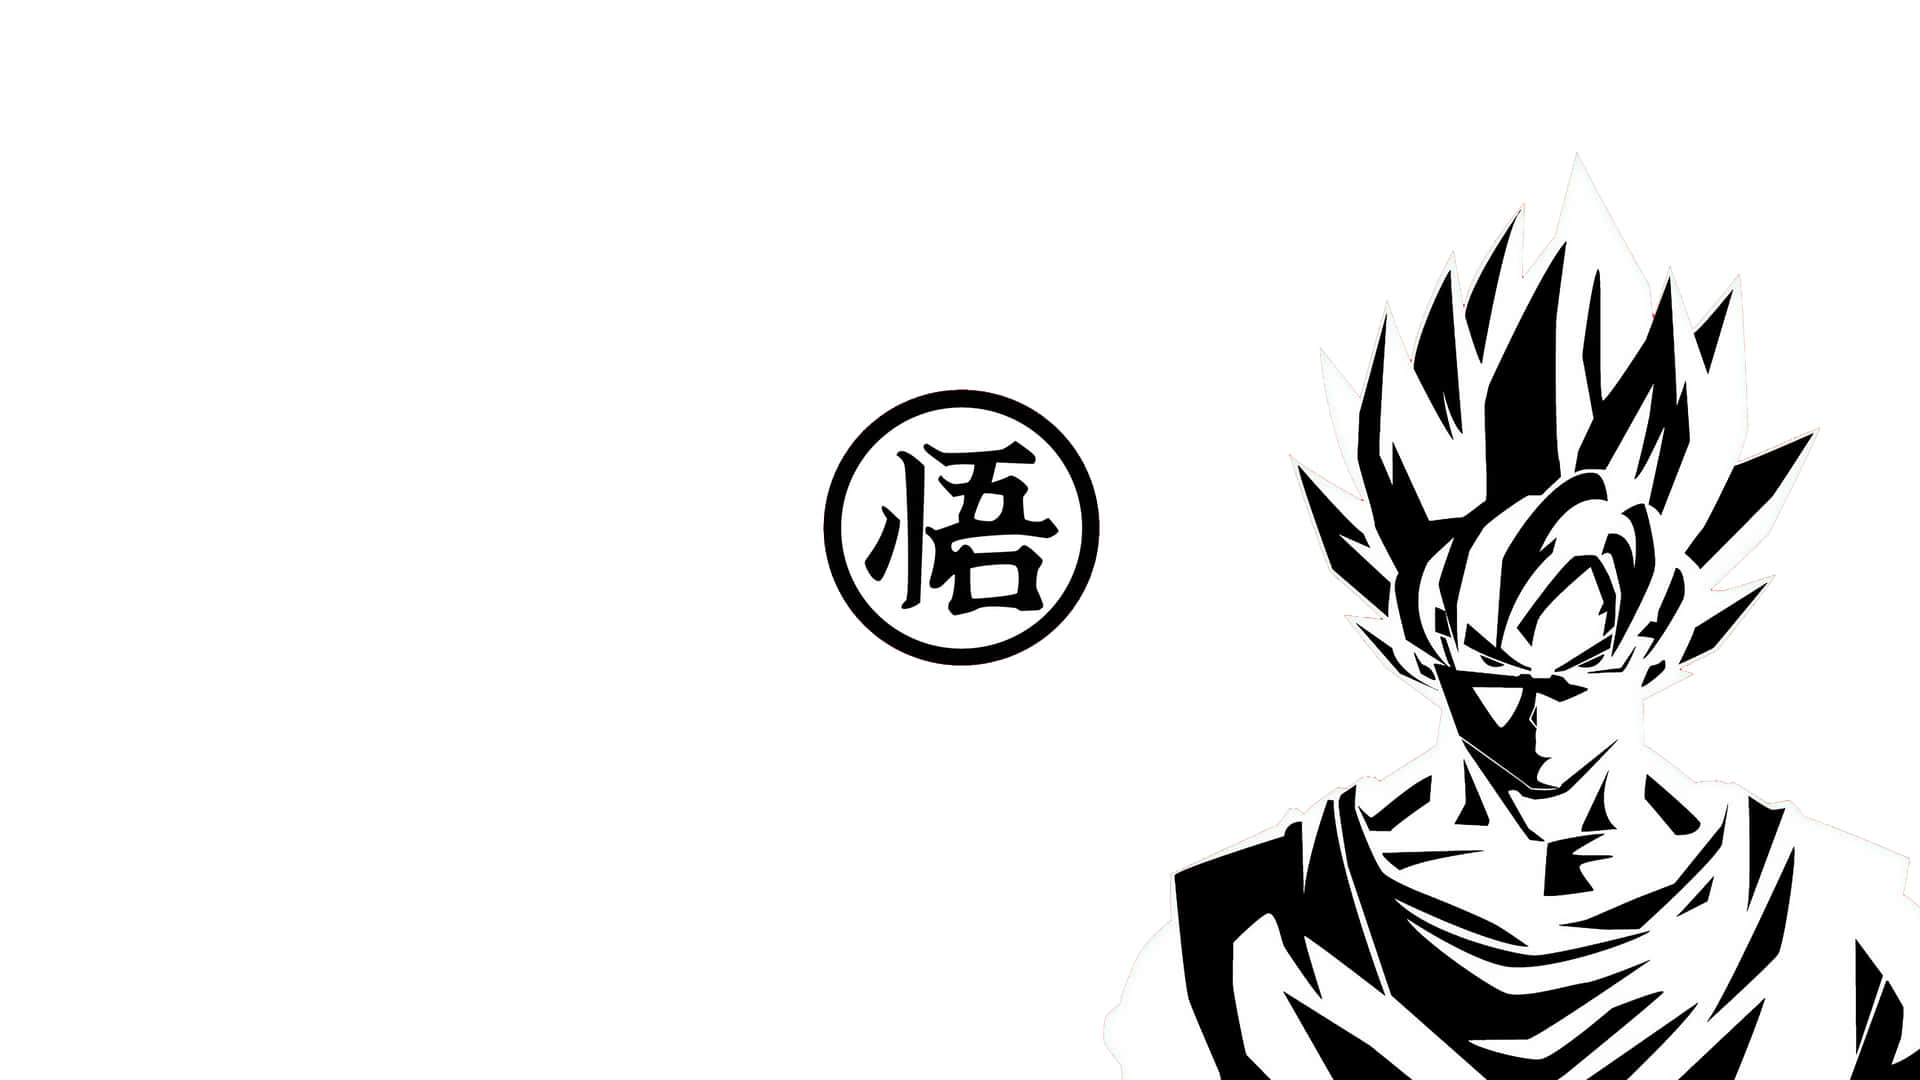 Unpoder Intenso Irradia Del Super Saiyan Dios En Esta Ilustración En Blanco Y Negro De Dragon Ball. Fondo de pantalla